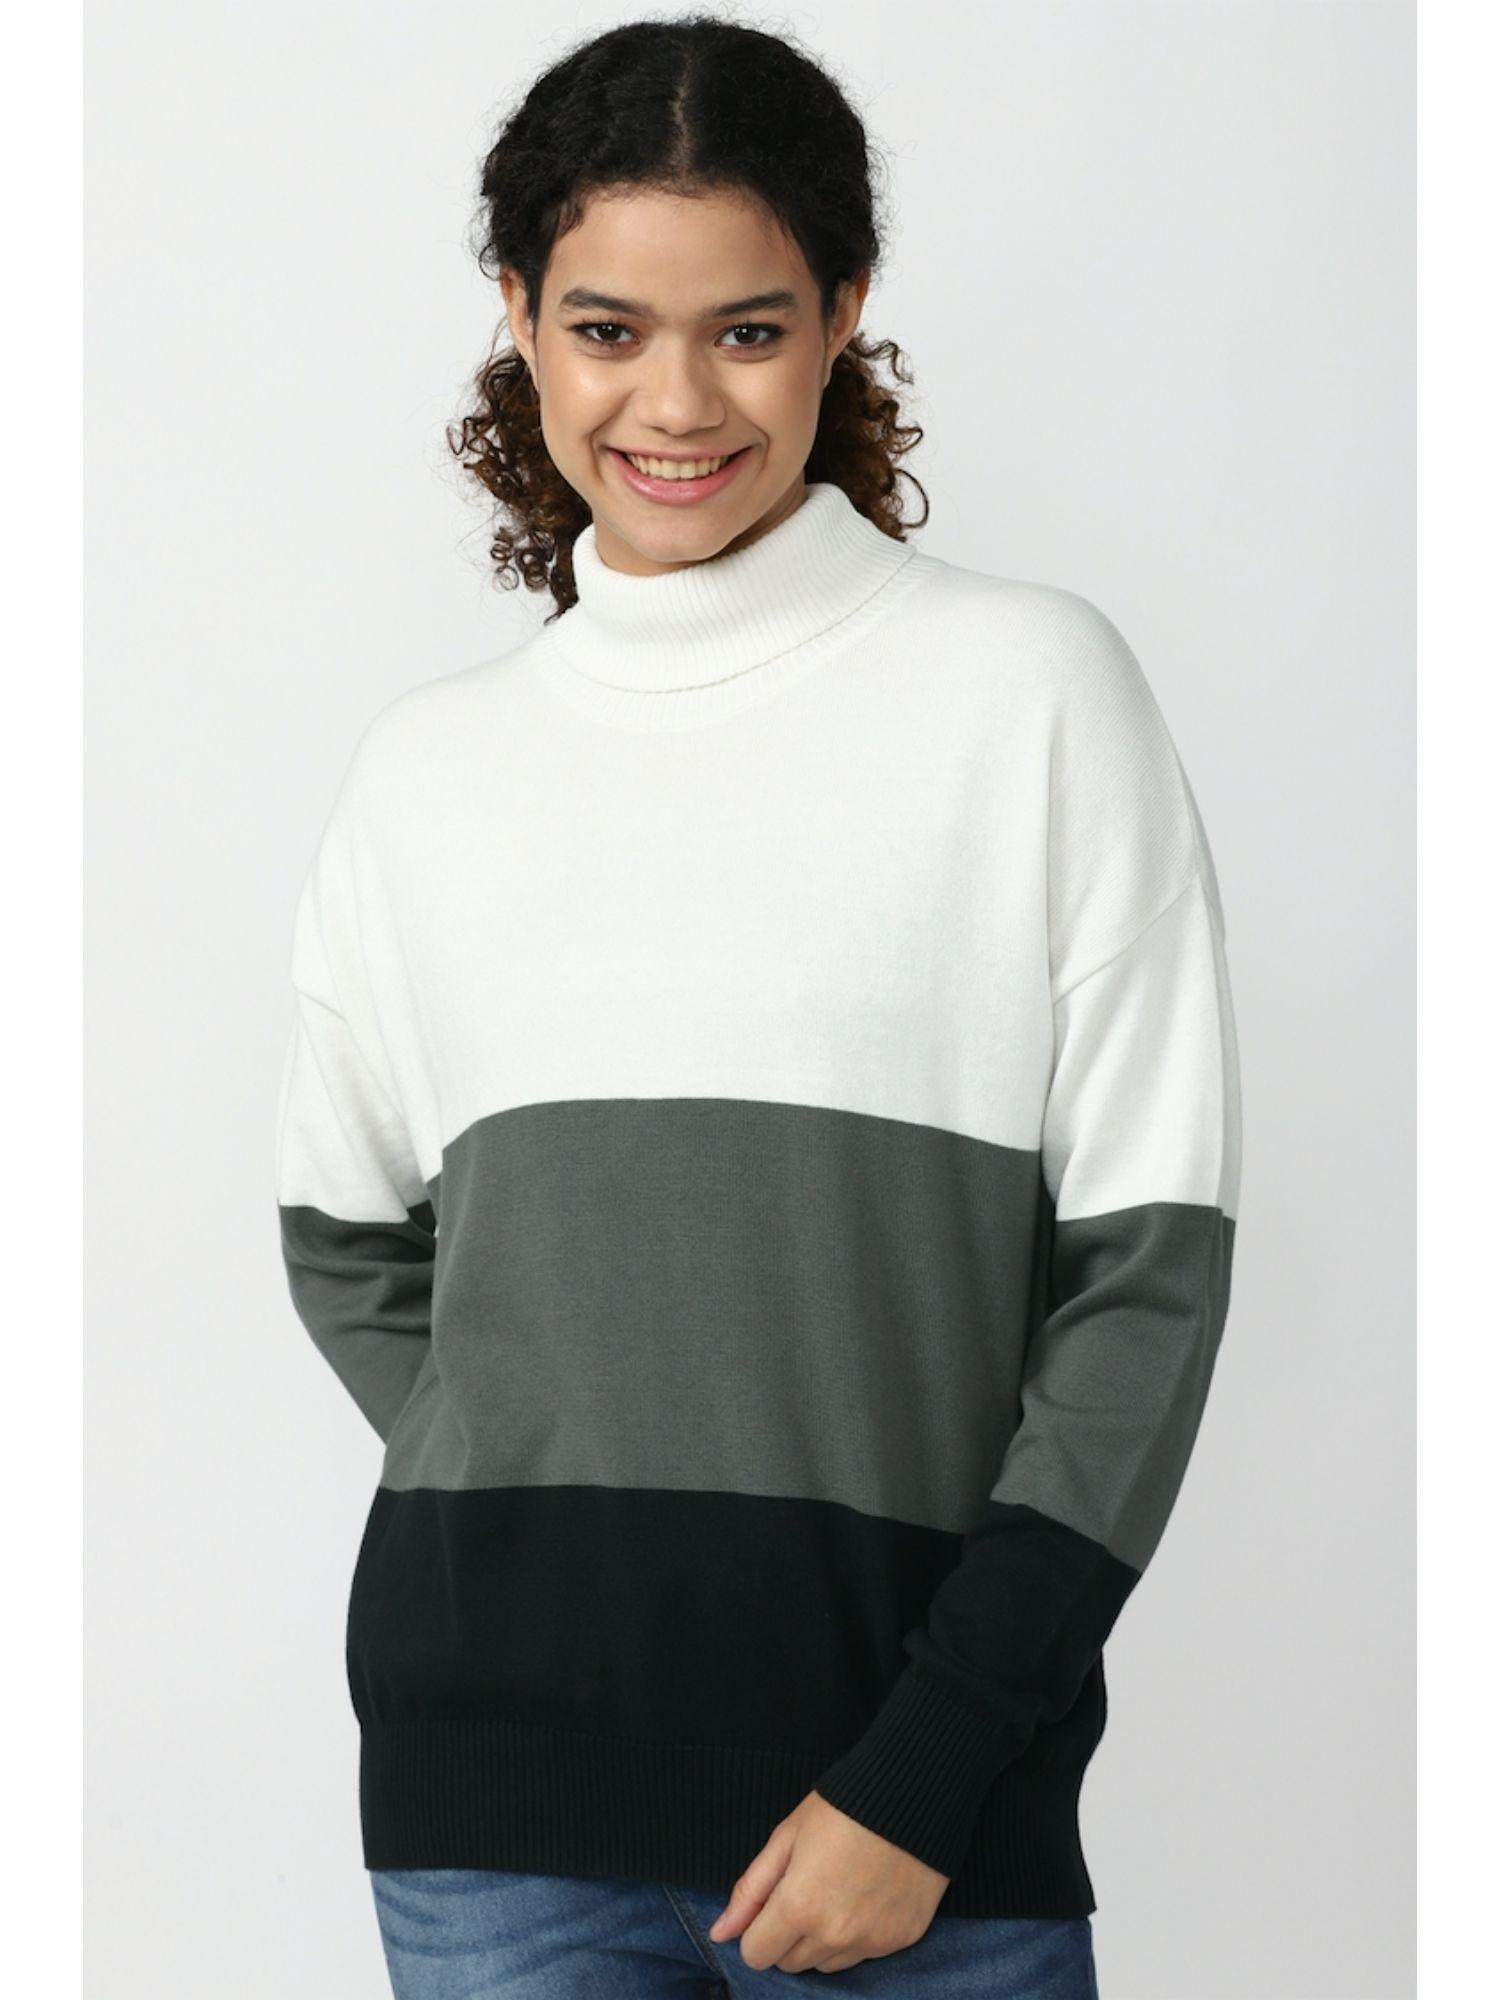 Colorblock Multi-color Sweater